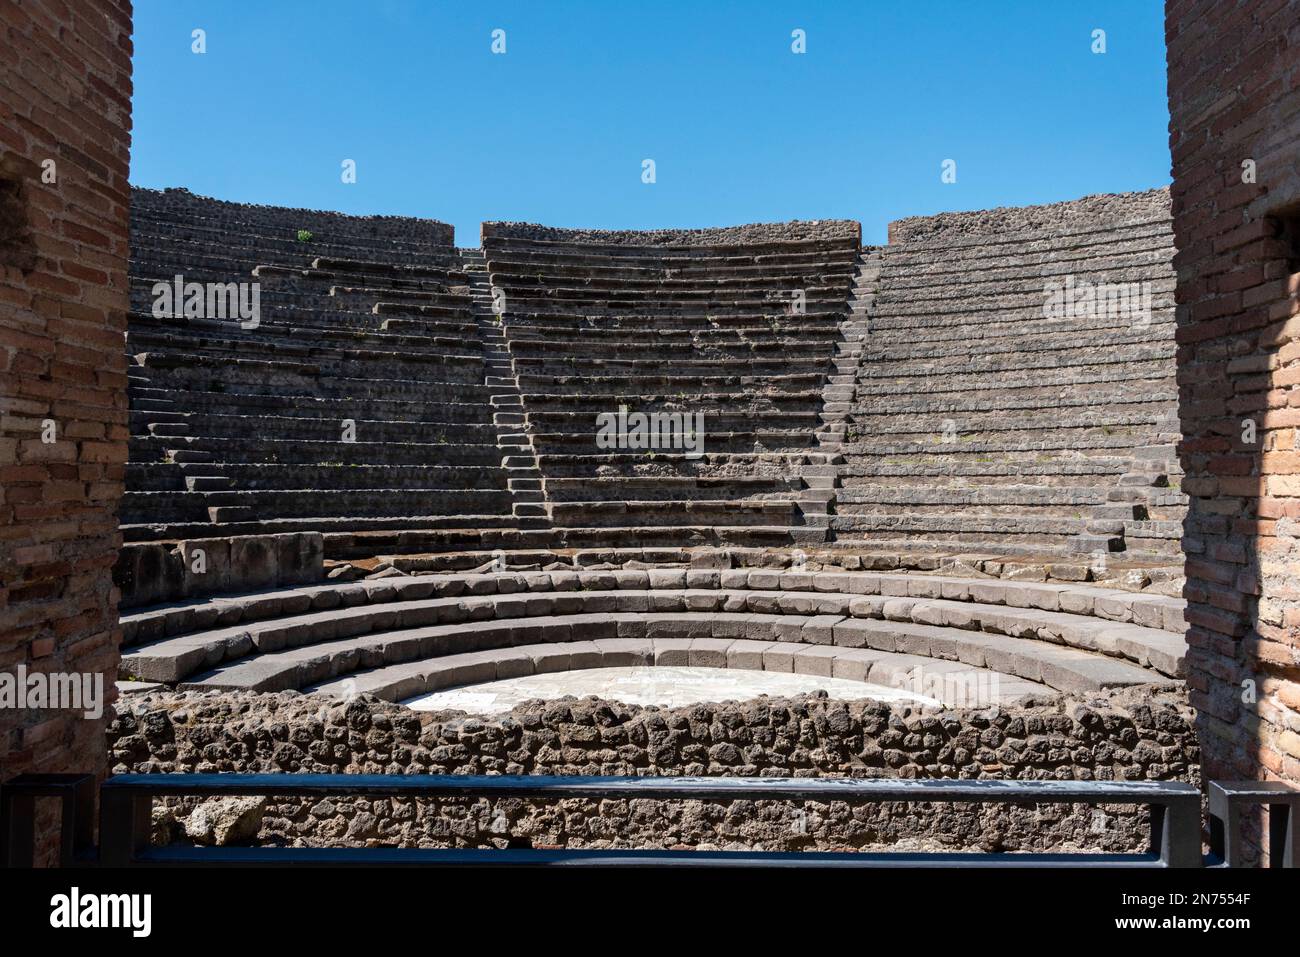 Théâtre romain typique de l'ancienne ville de Pompéi, dans le sud de l'Italie Banque D'Images